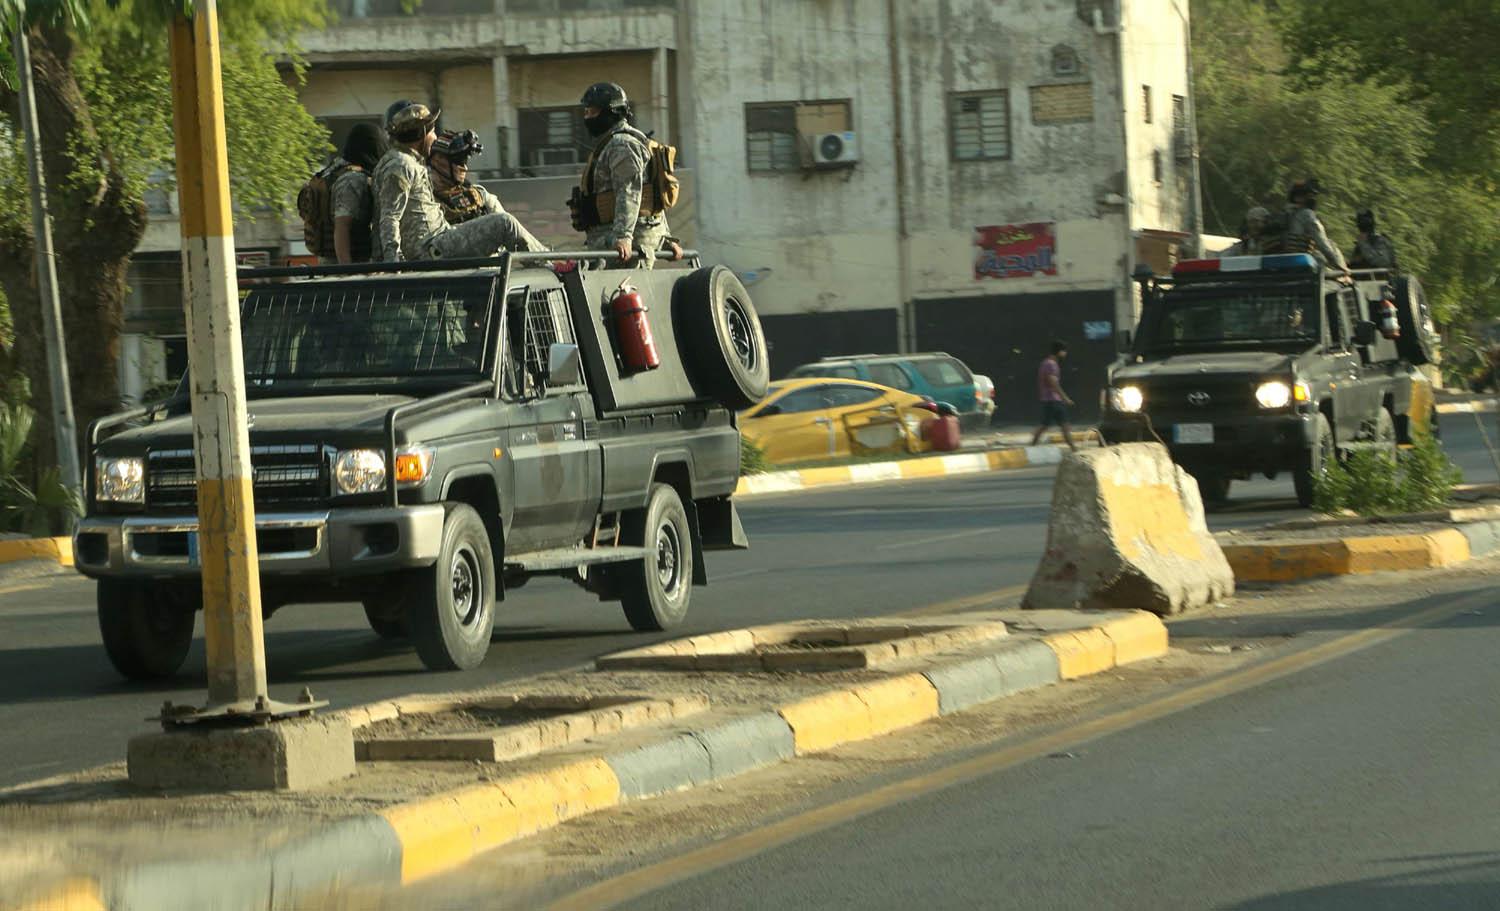 دوريات للحشد الشعبي تحيط بالمنطقة الخضراء في بغداد